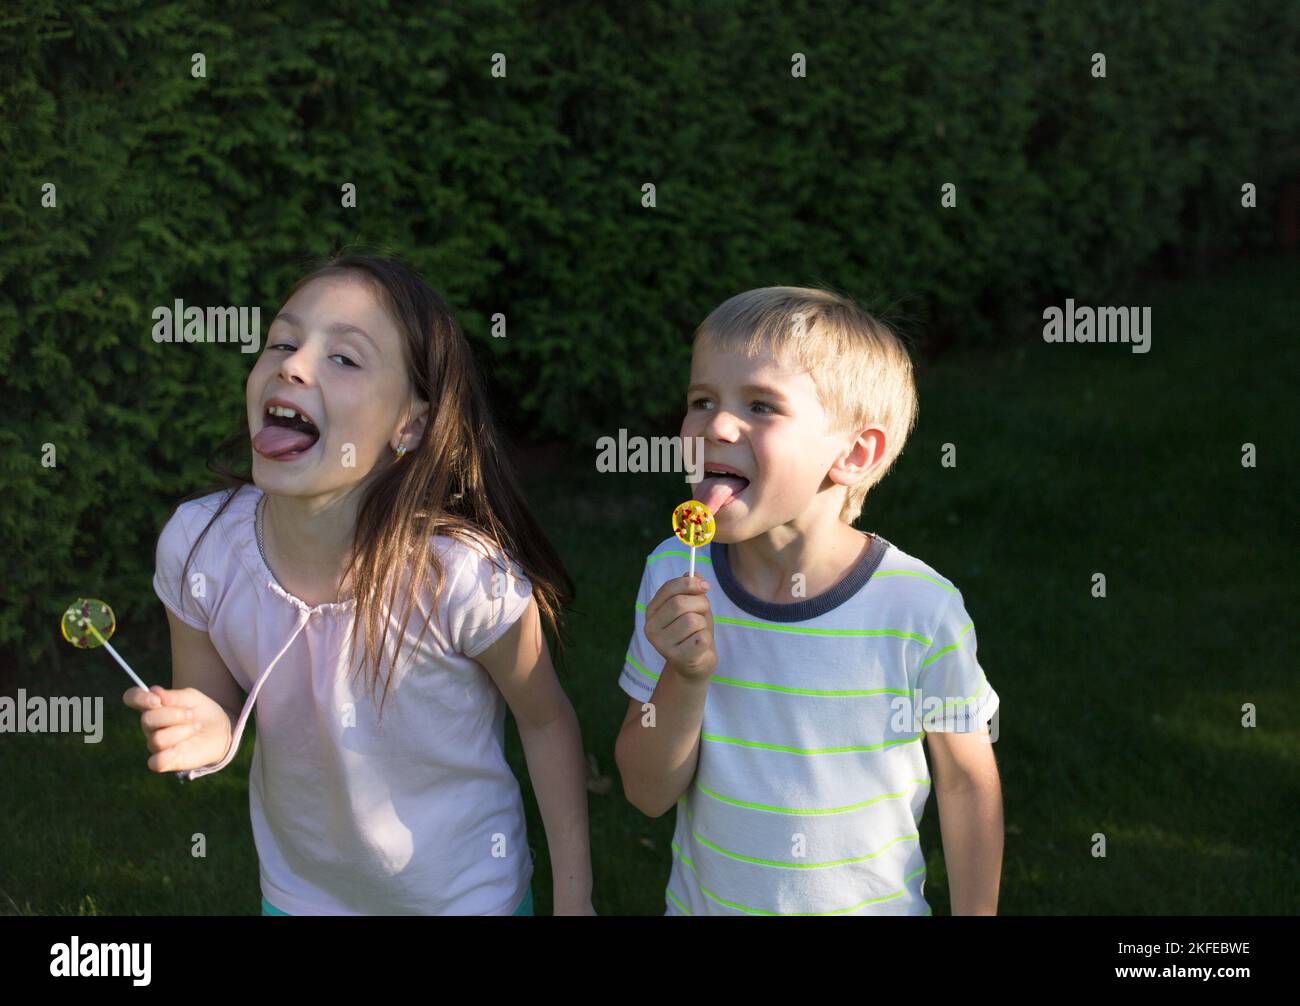 allegro ragazzo e ragazza di 6-7 anni con dolci caramelle su un bastone divertirsi in giardino. Amicizia, dolce infanzia, dolci, umore estivo Foto Stock